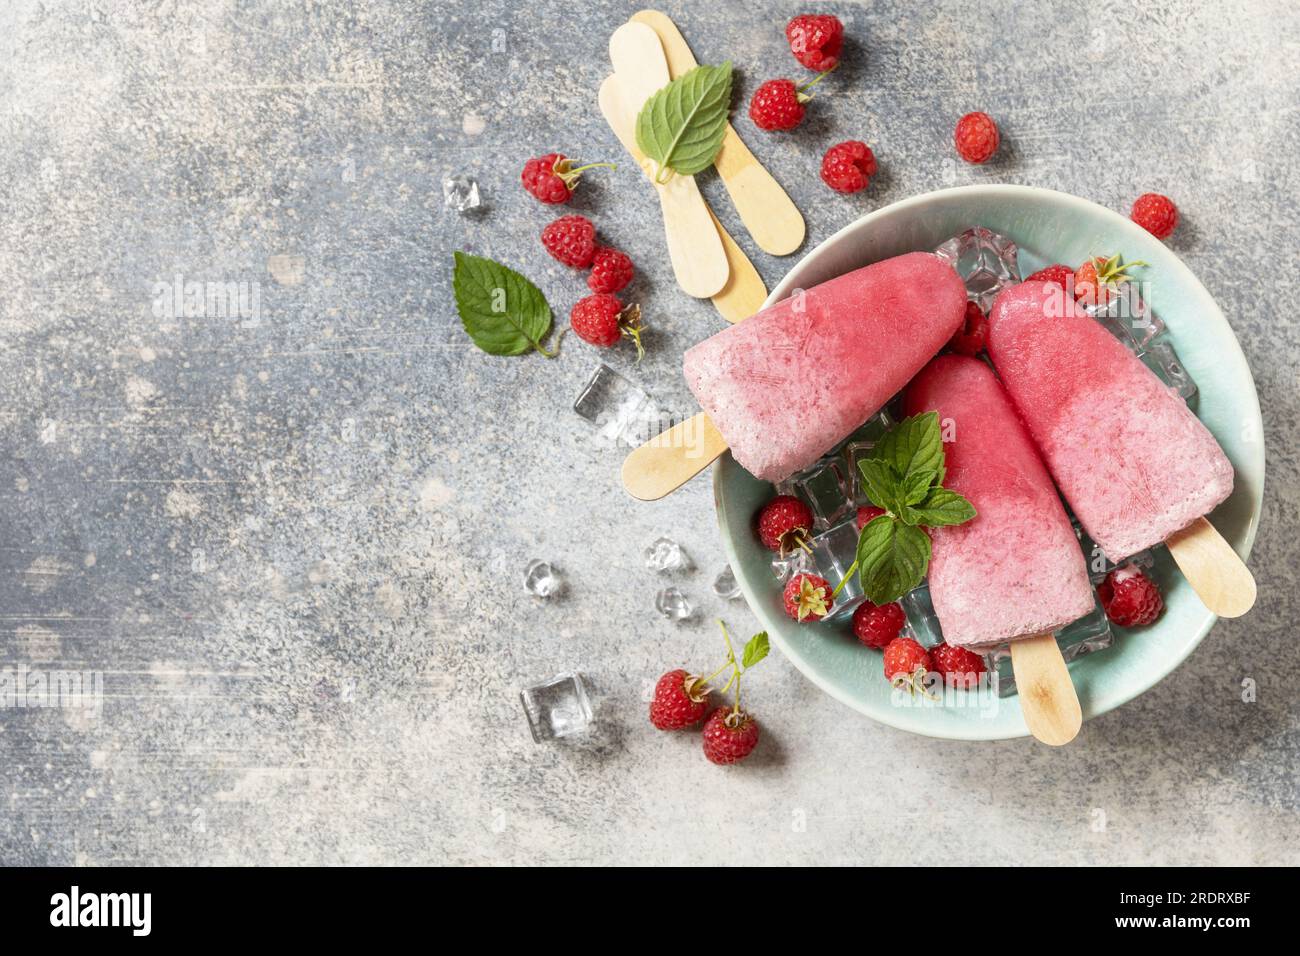 Popsicles de framboise maison avec yaourt et framboises sur un fond de pierre grise. Crème glacée. Dessert d'été. Vue d'en haut. Espace de copie. Banque D'Images